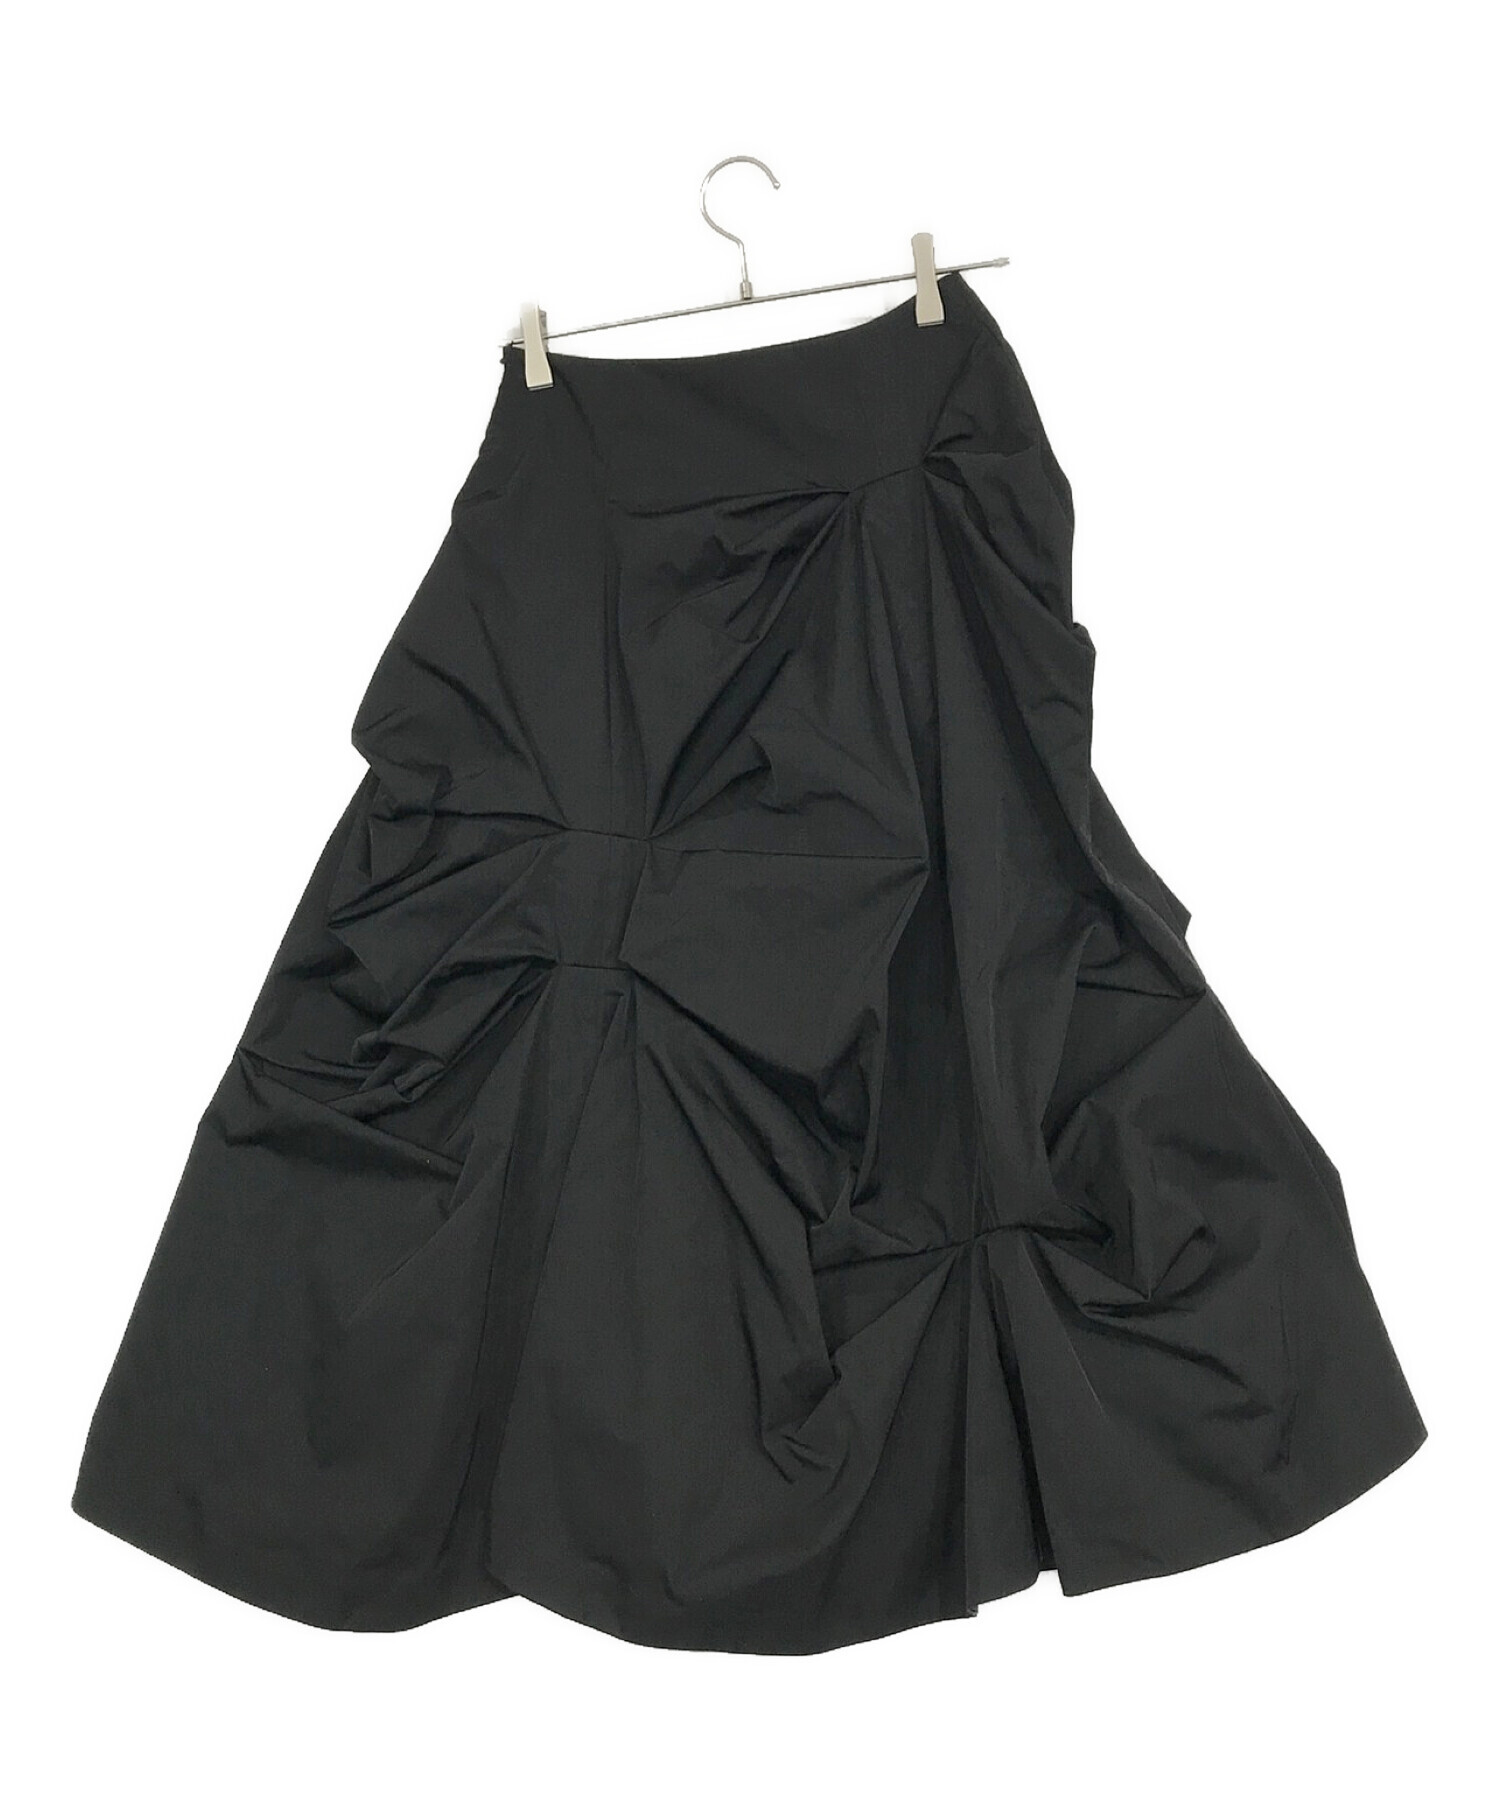 ENFOLD (エンフォルド) メモリーツイル ランダムタック スカート ブラック サイズ:SIZE 36